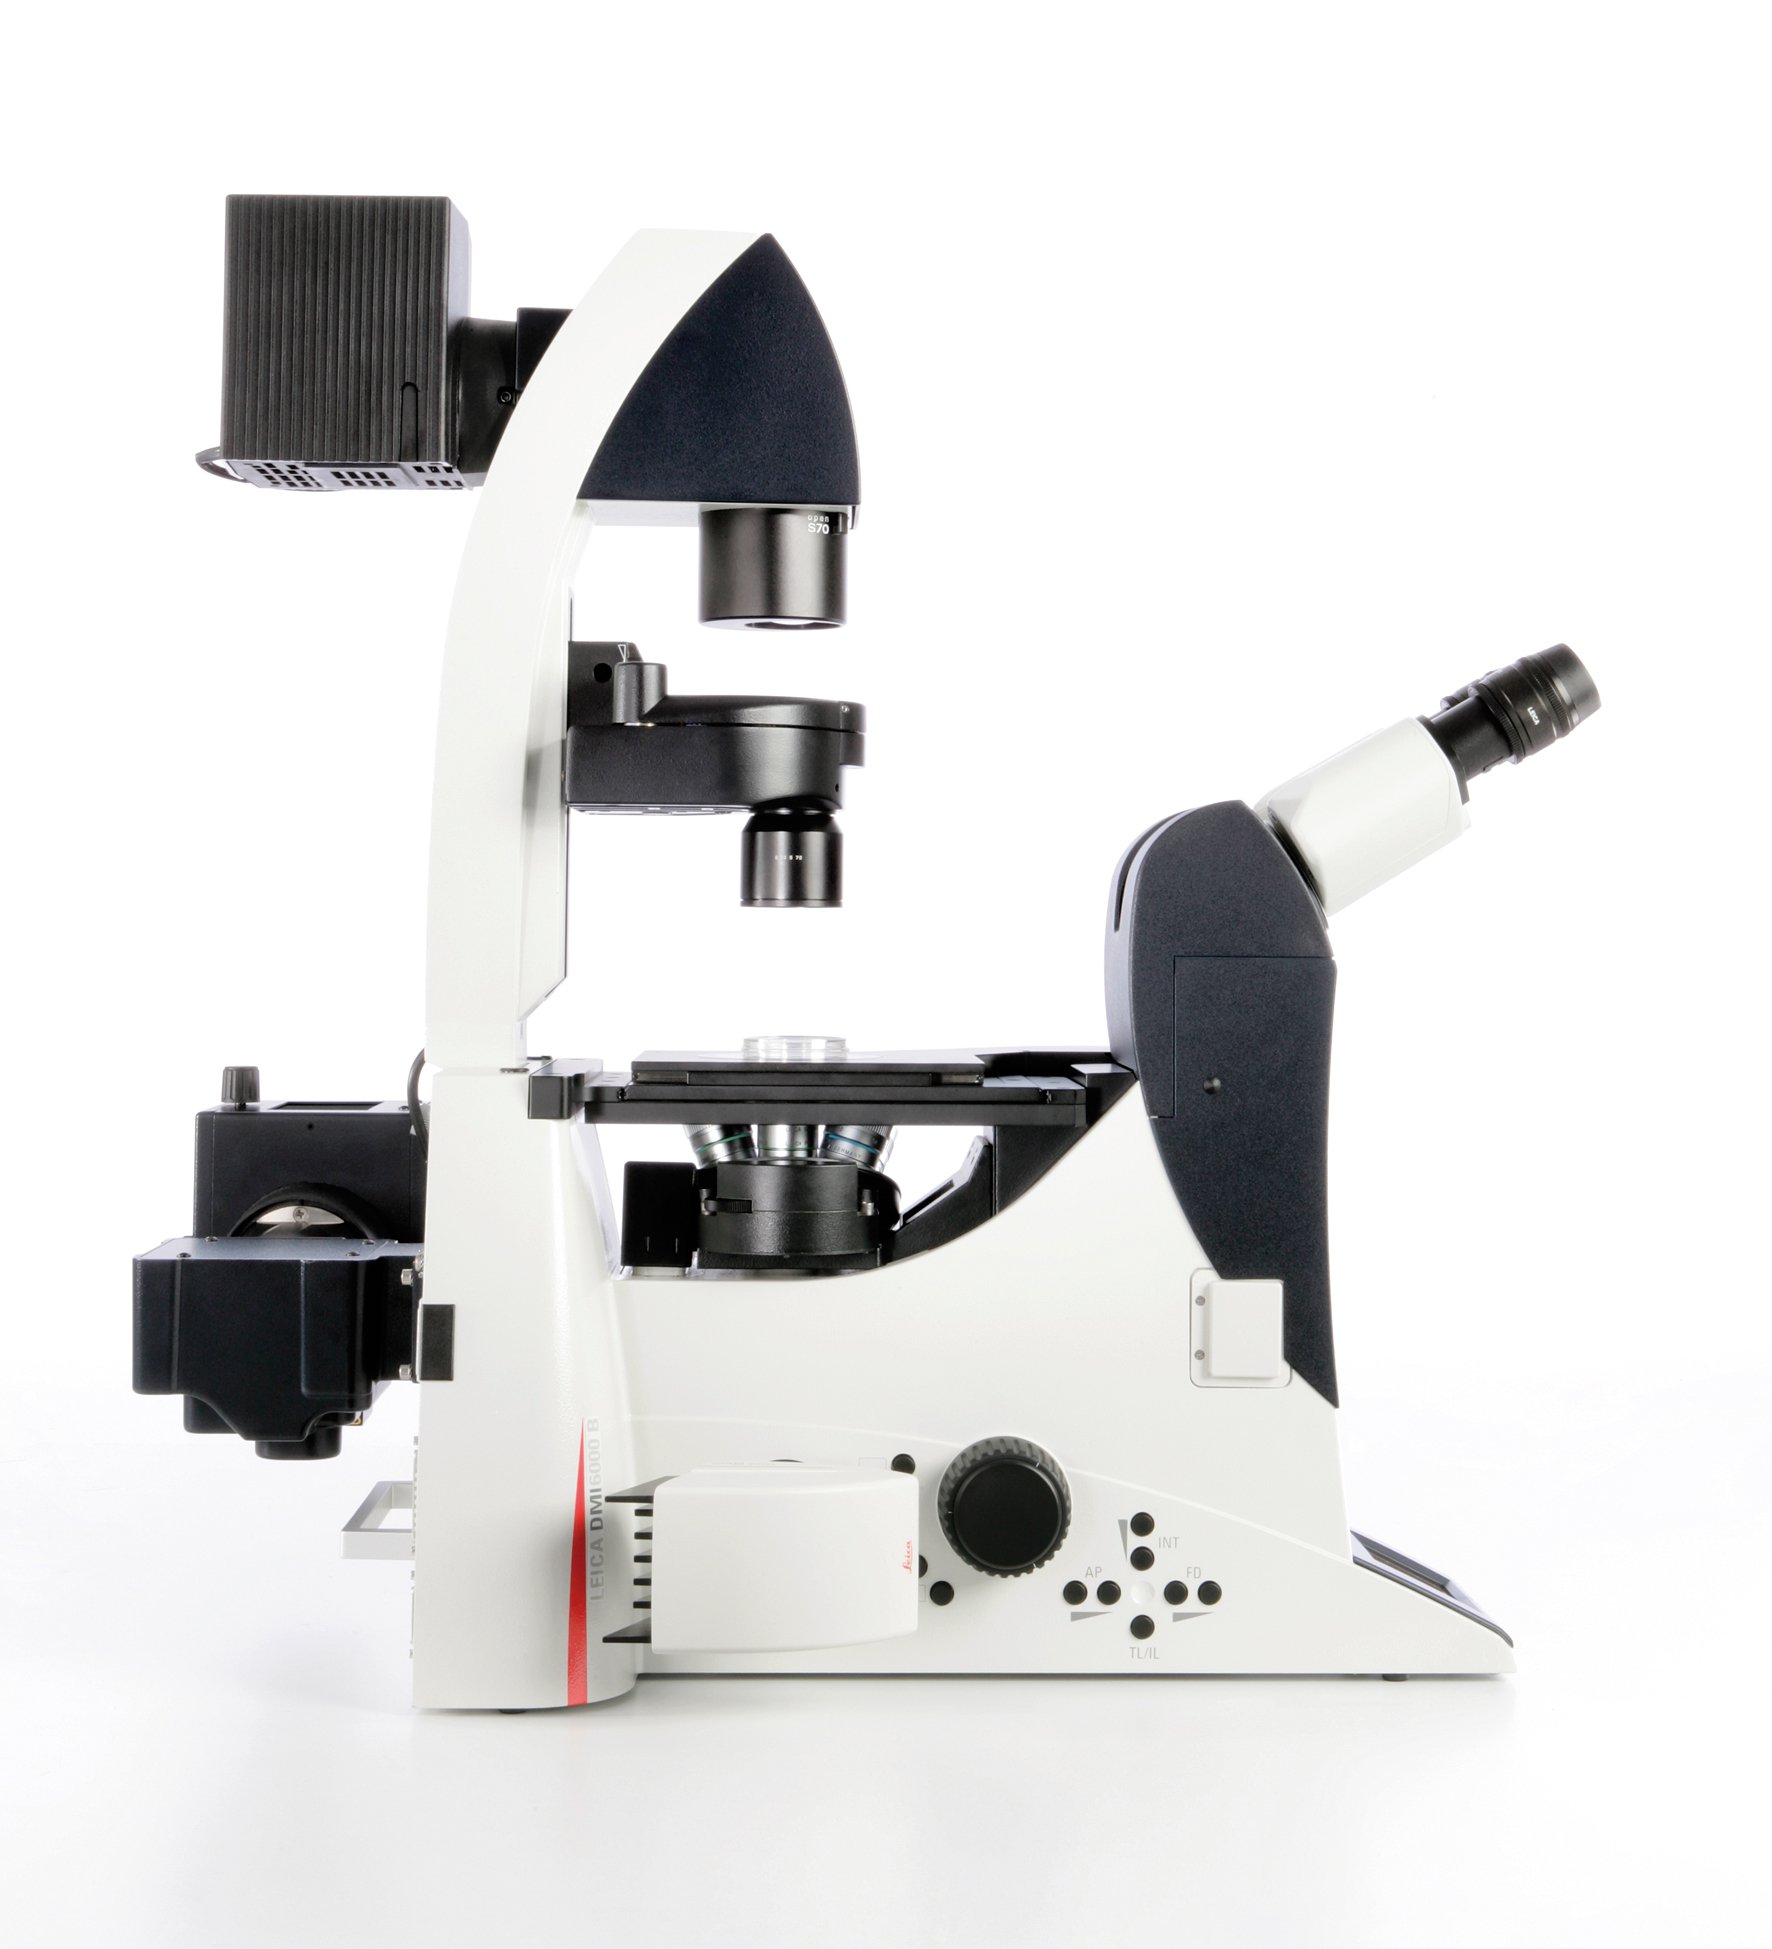 Das Leica DMI6000 B bietet höchste Automatisierung für anspruchsvolle Forschungsanwendungen